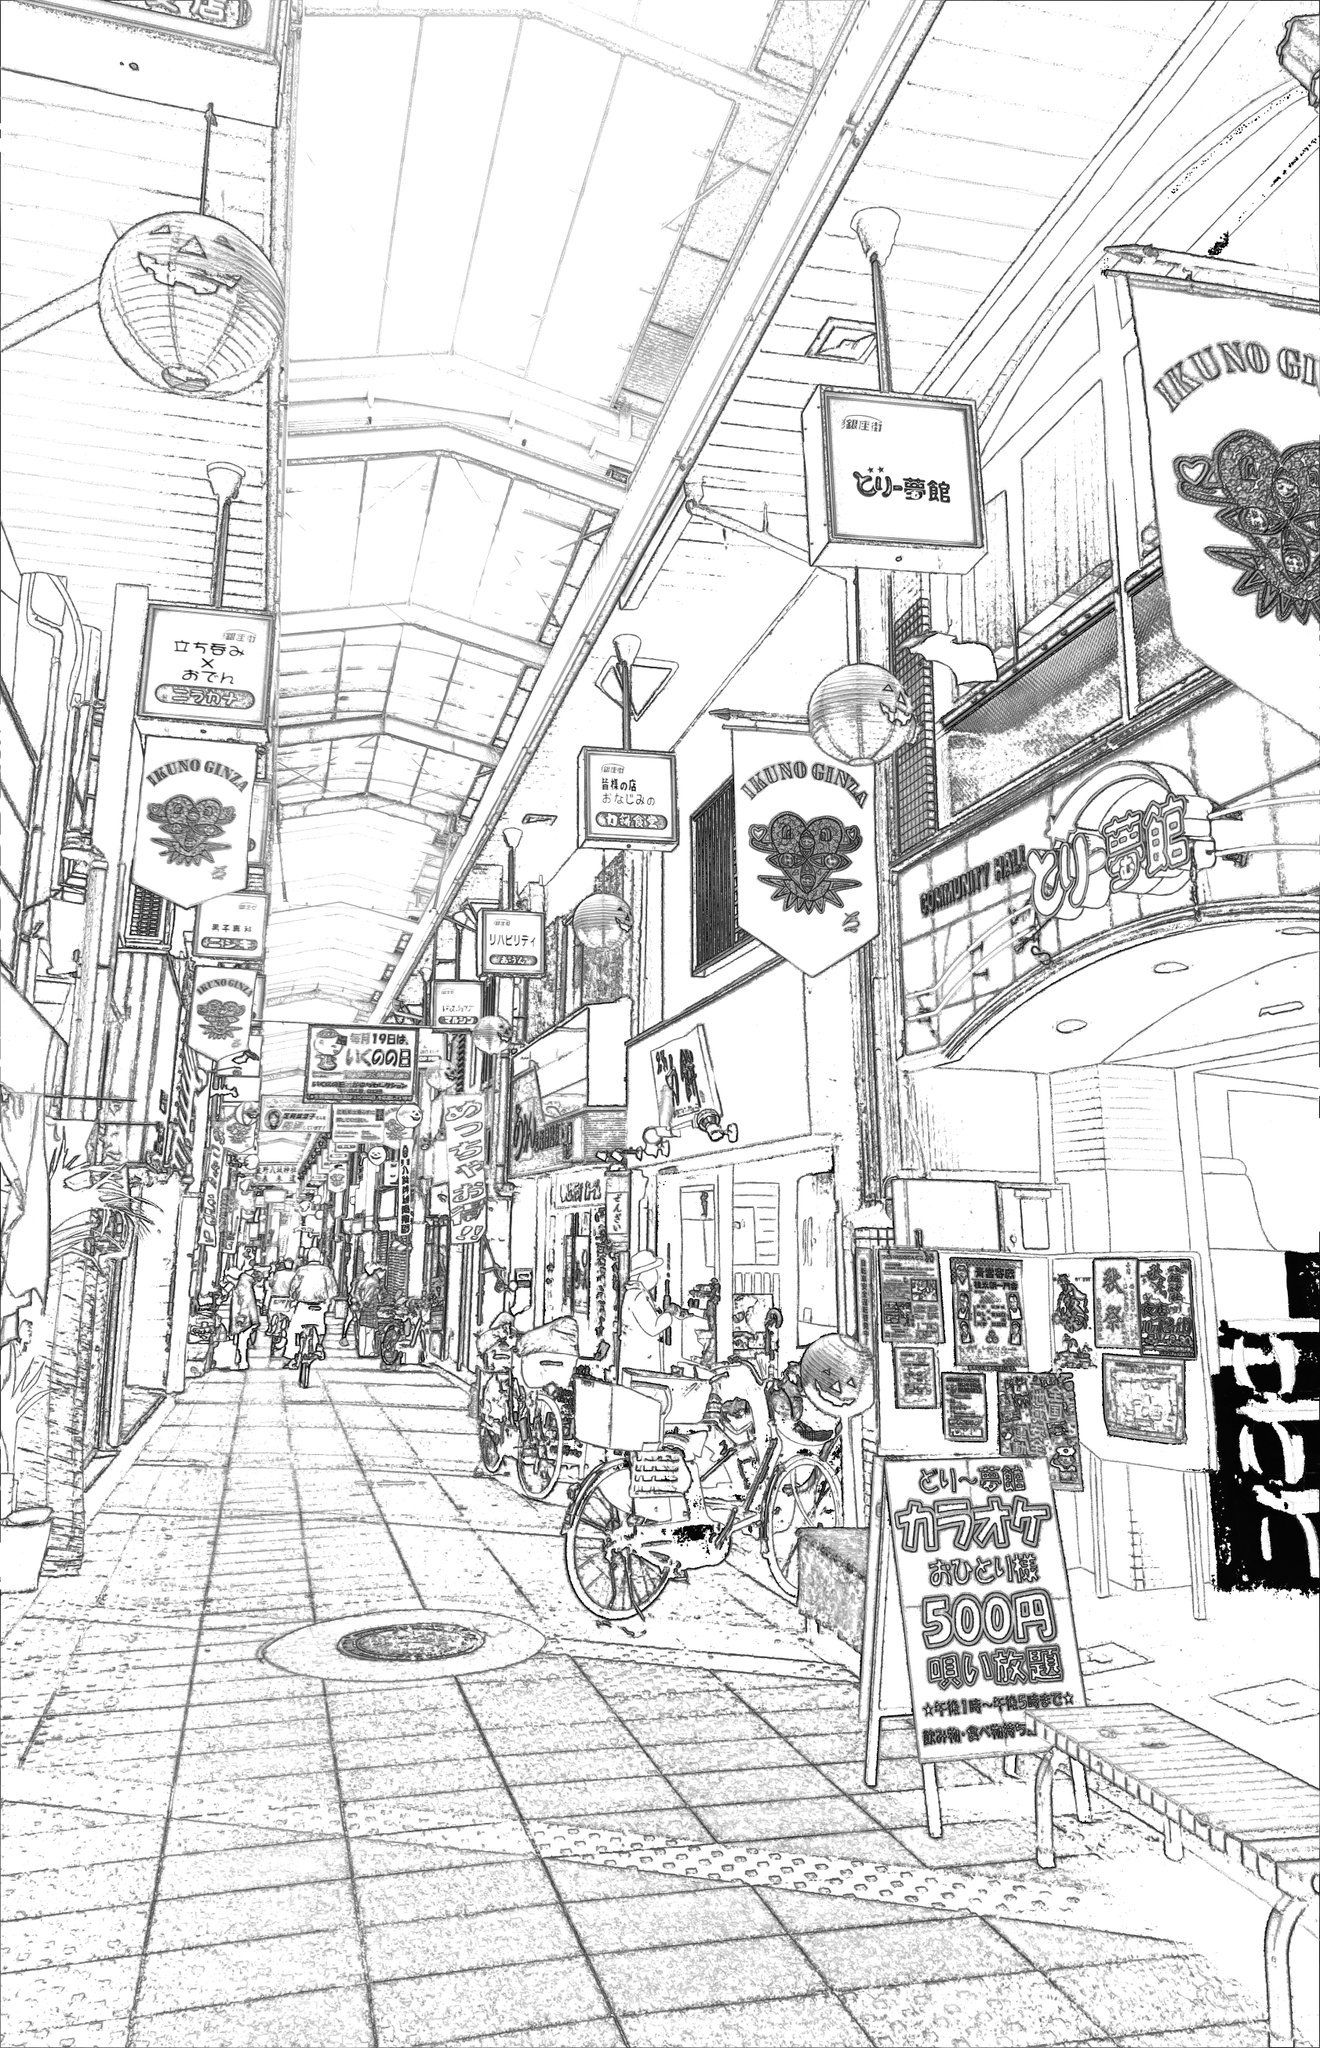 ハギハラクリーニング 線画を晒すと誰かが色を塗ってくれるかもしれない 商店街の線画ぬりえ第3弾 大阪の生野区にある商店街の風景です 塗って下さる方がいらっしゃったら嬉しいです よろしくお願いします 透過pngと印刷用pdfコメ欄に置いておきます